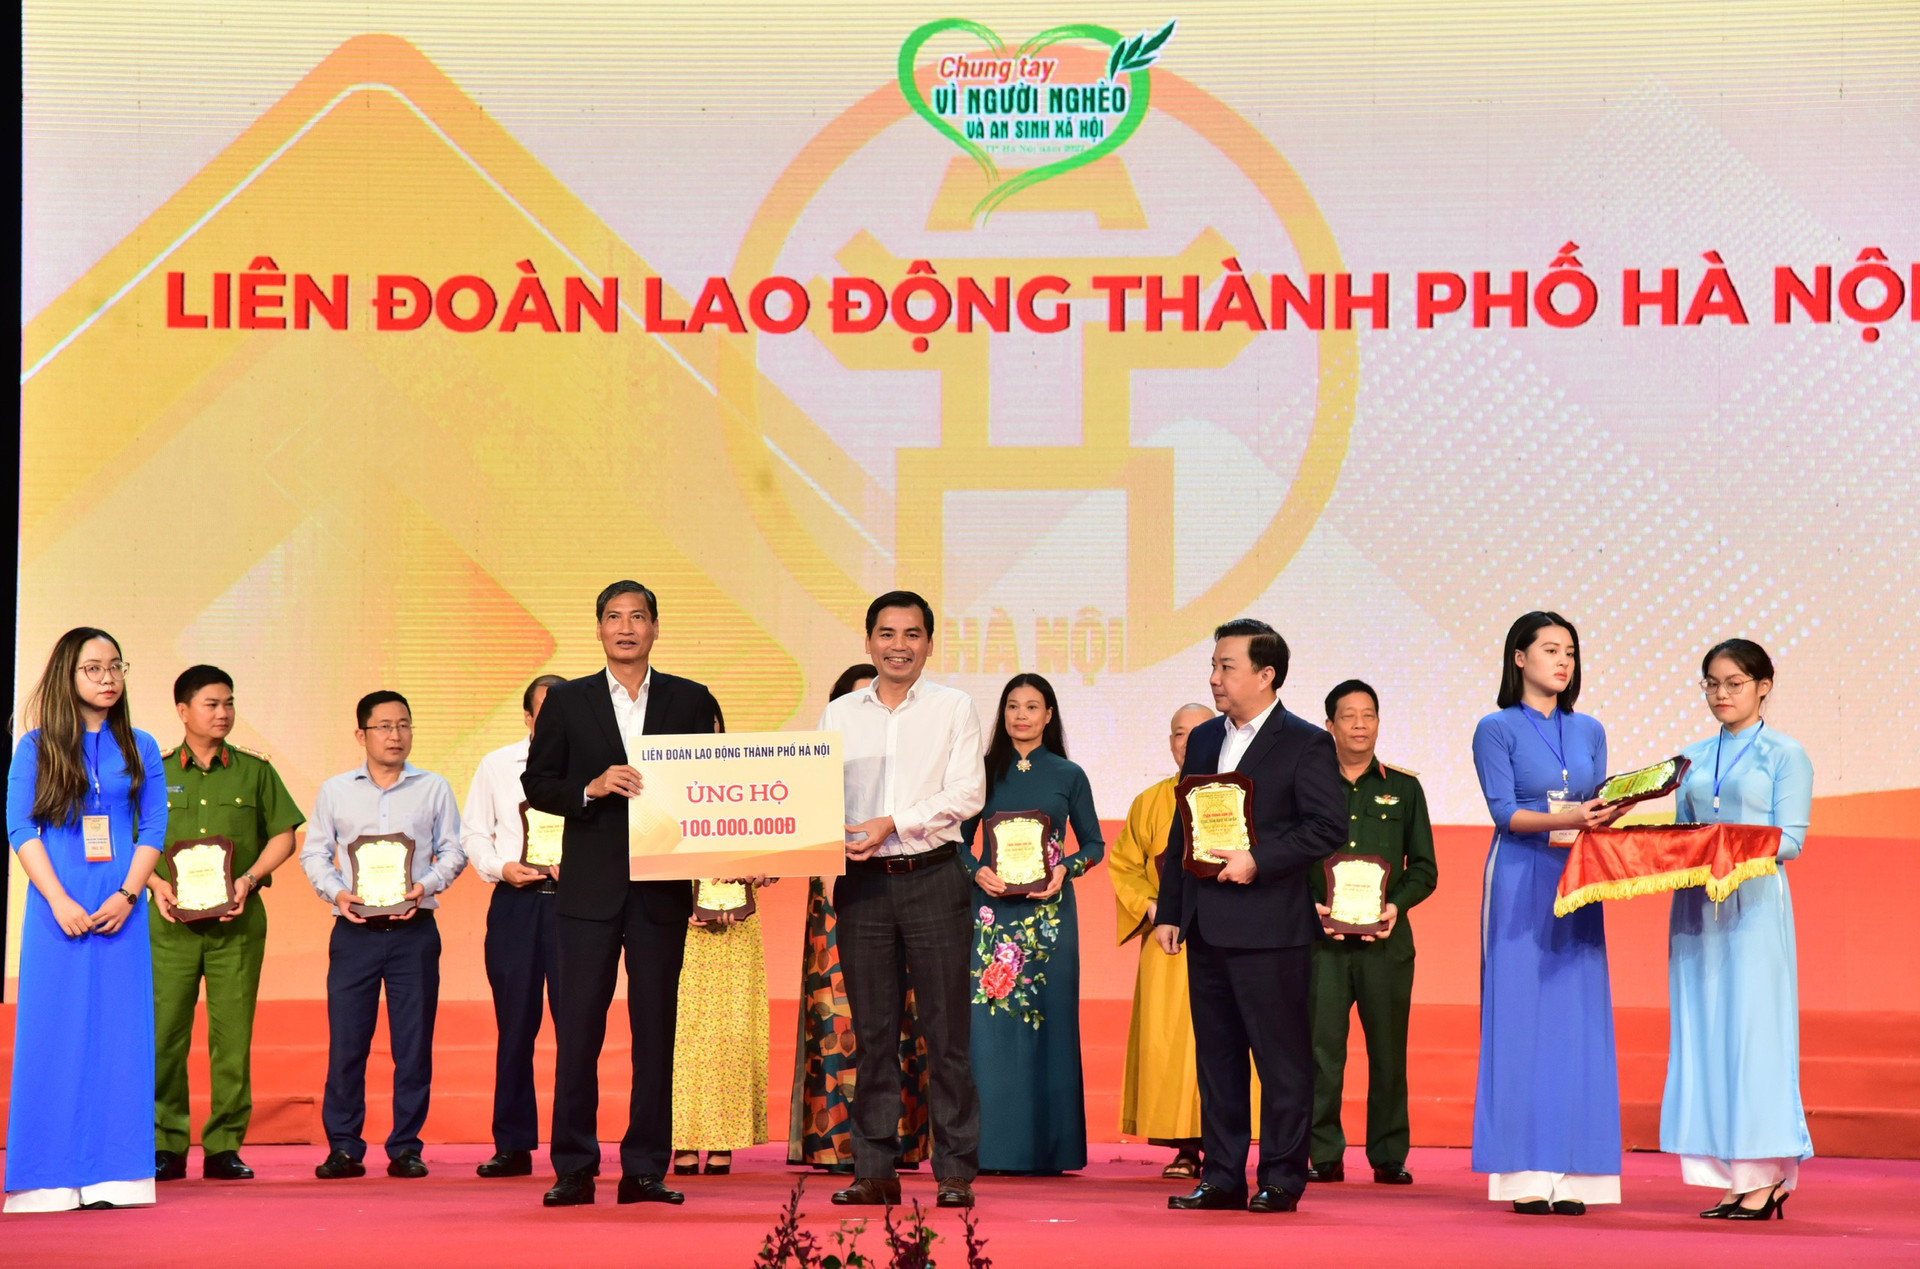 Lãnh đạo UBND - Ủy ban MTTQ thành phố Hà Nội tiếp nhận ủng hộ từ các đơn vị.